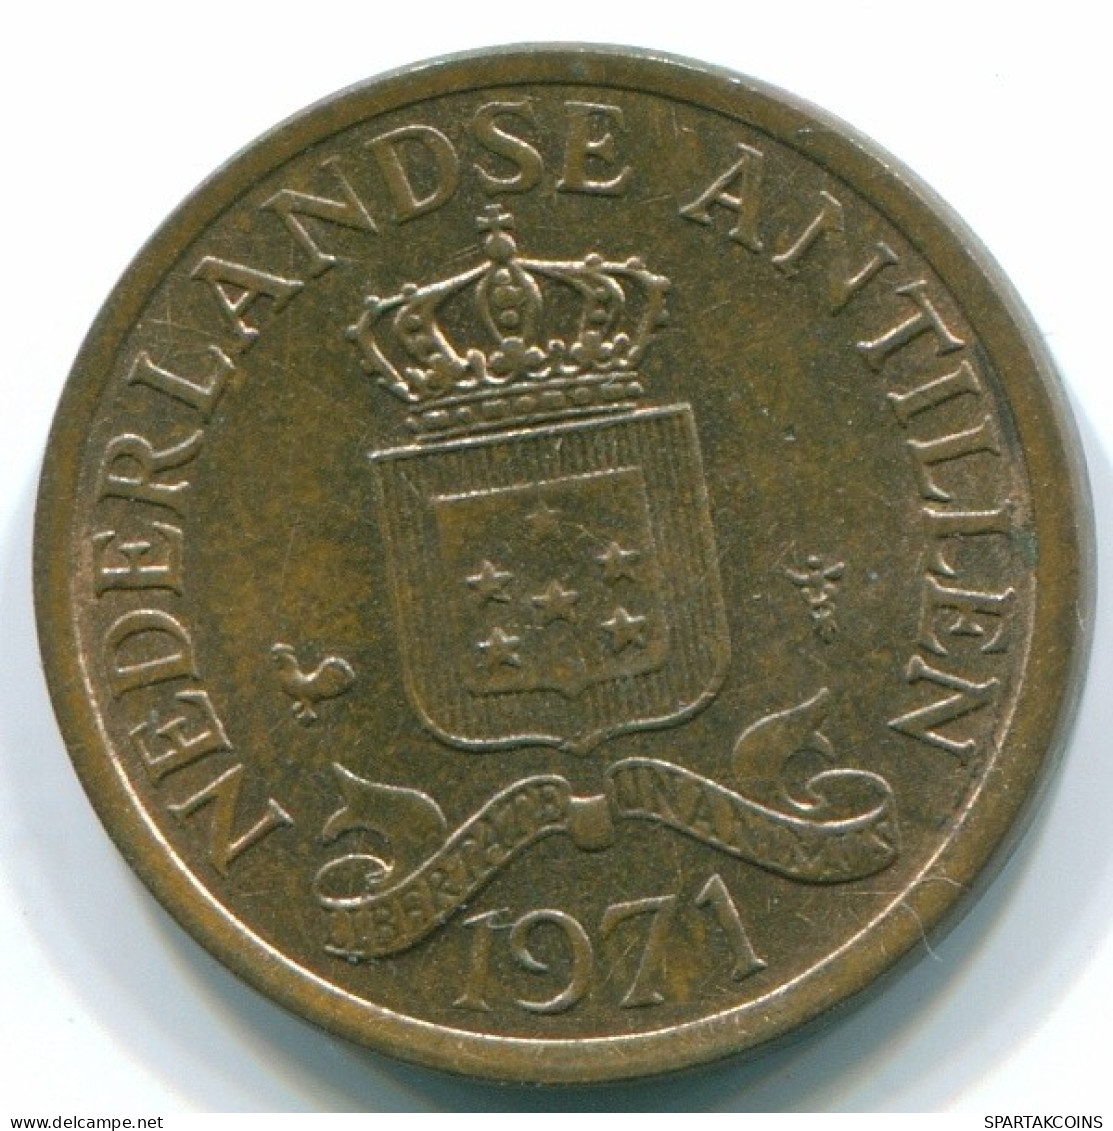 1 CENT 1971 NIEDERLÄNDISCHE ANTILLEN Bronze Koloniale Münze #S10620.D.A - Antillas Neerlandesas